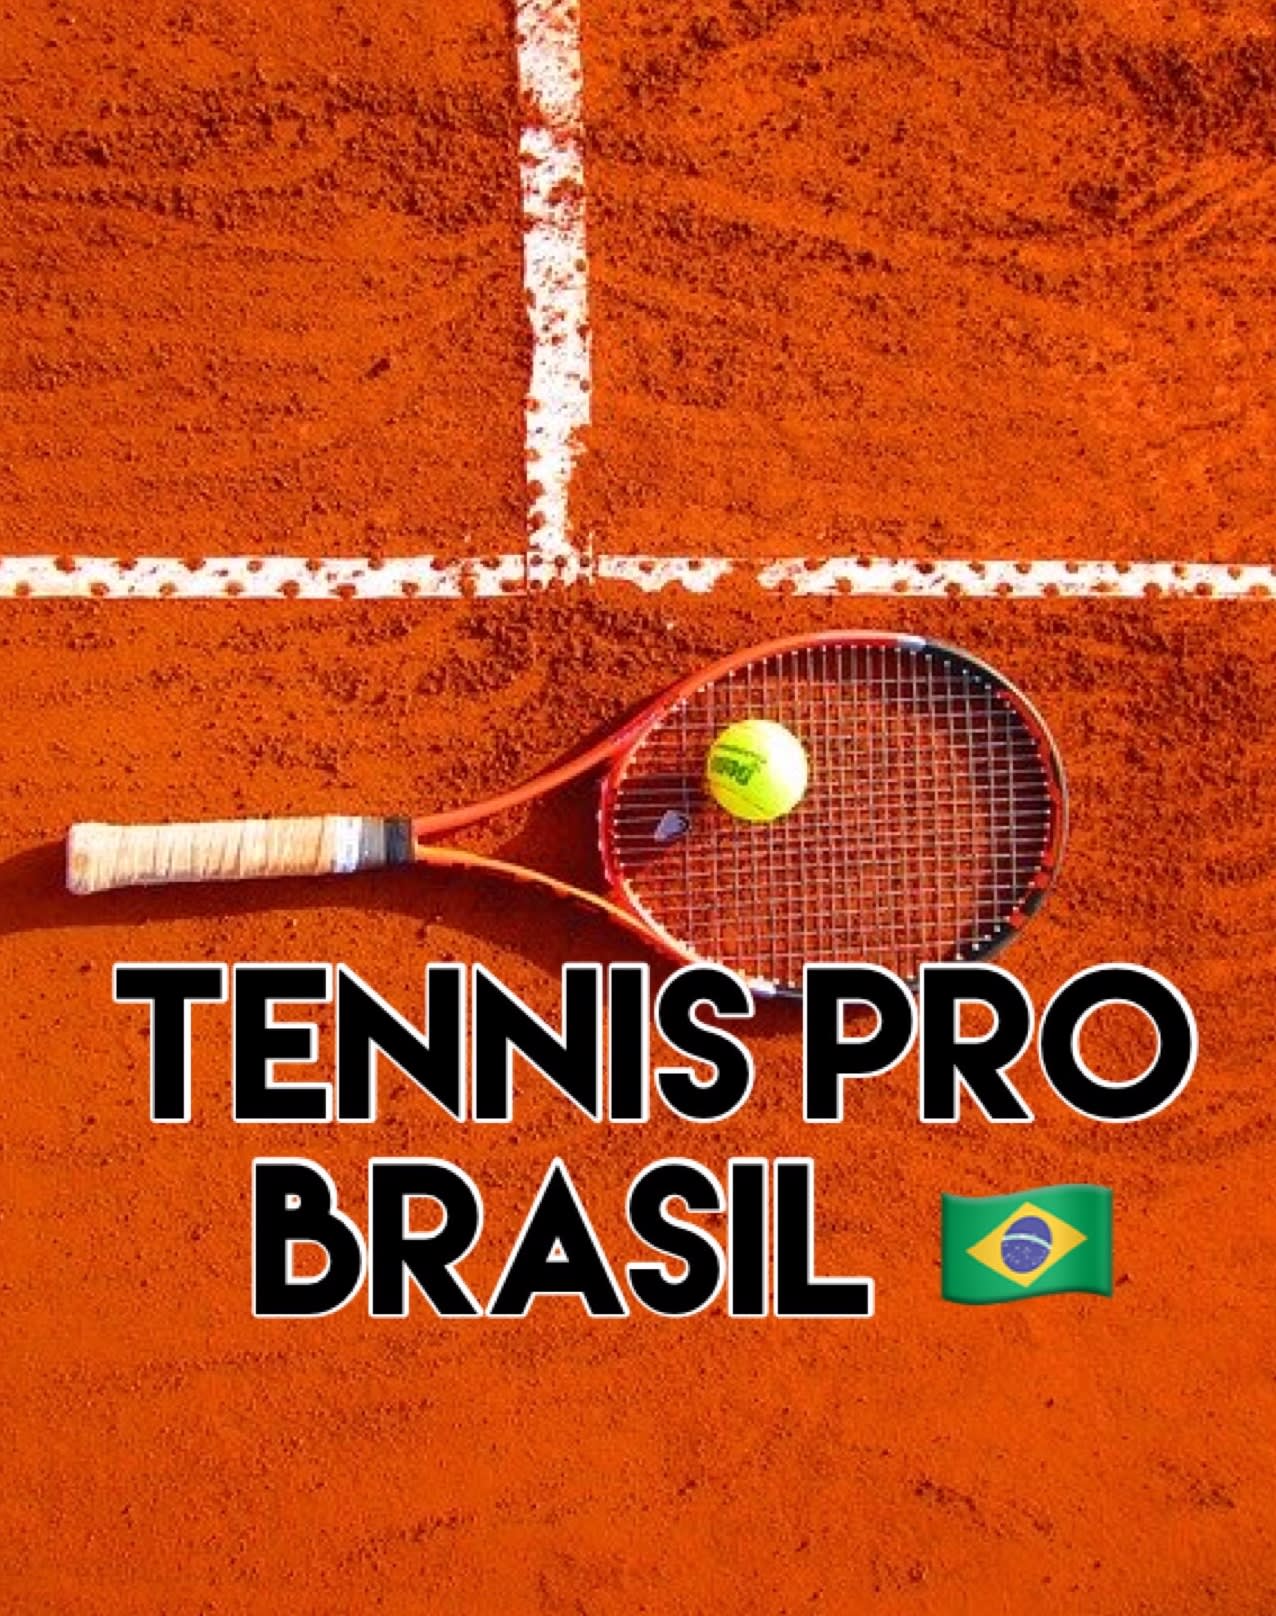 Tennis Pro Brasil